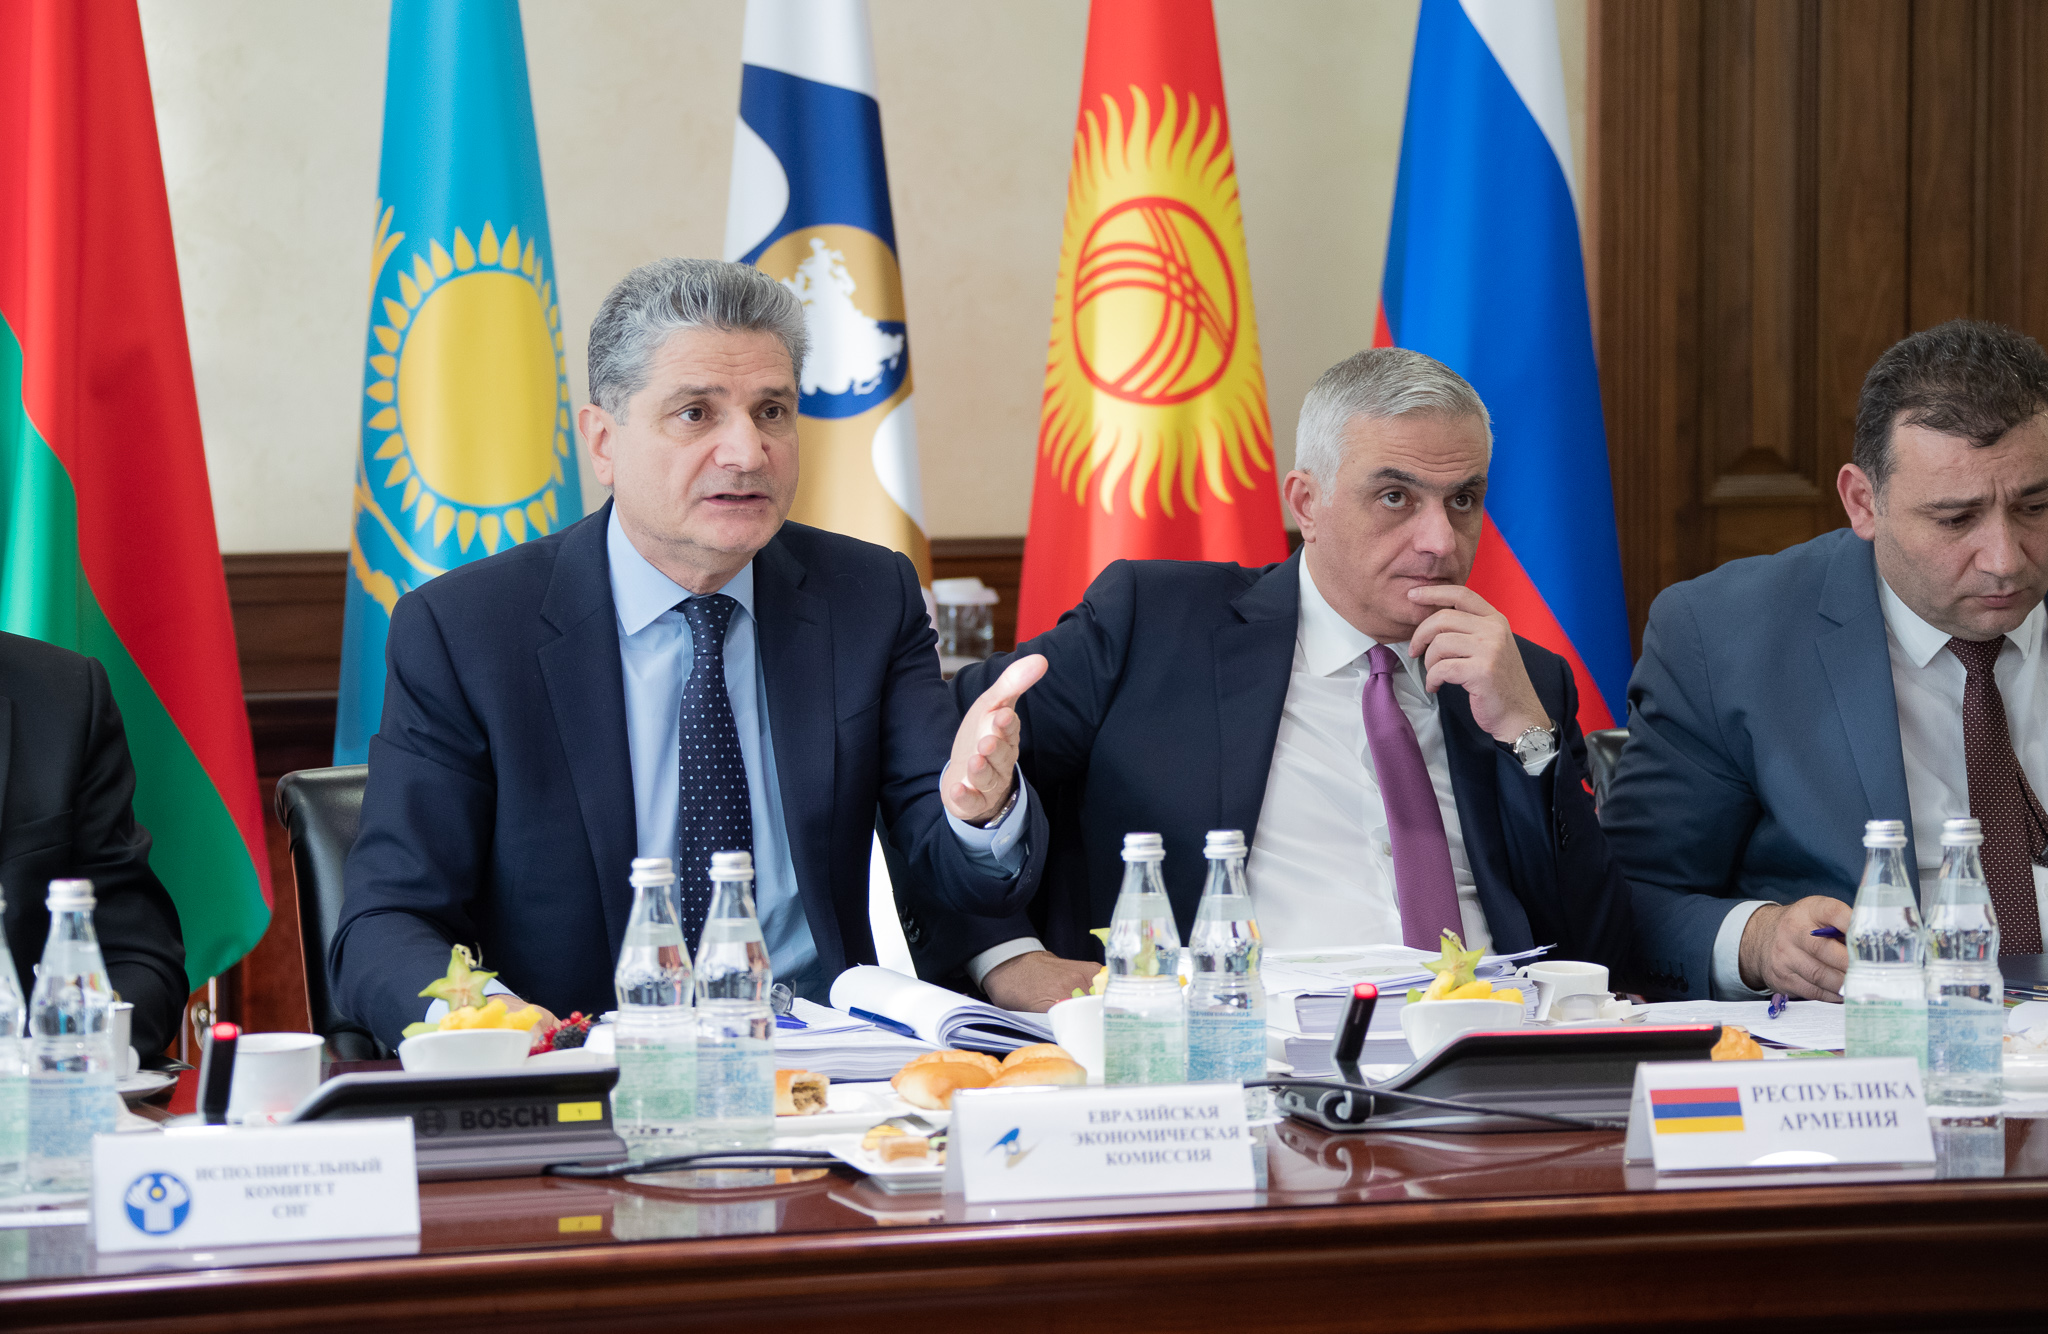 Вице-премьер поднял вопрос трудоустройства и водительских прав граждан Армении в ЕЭК